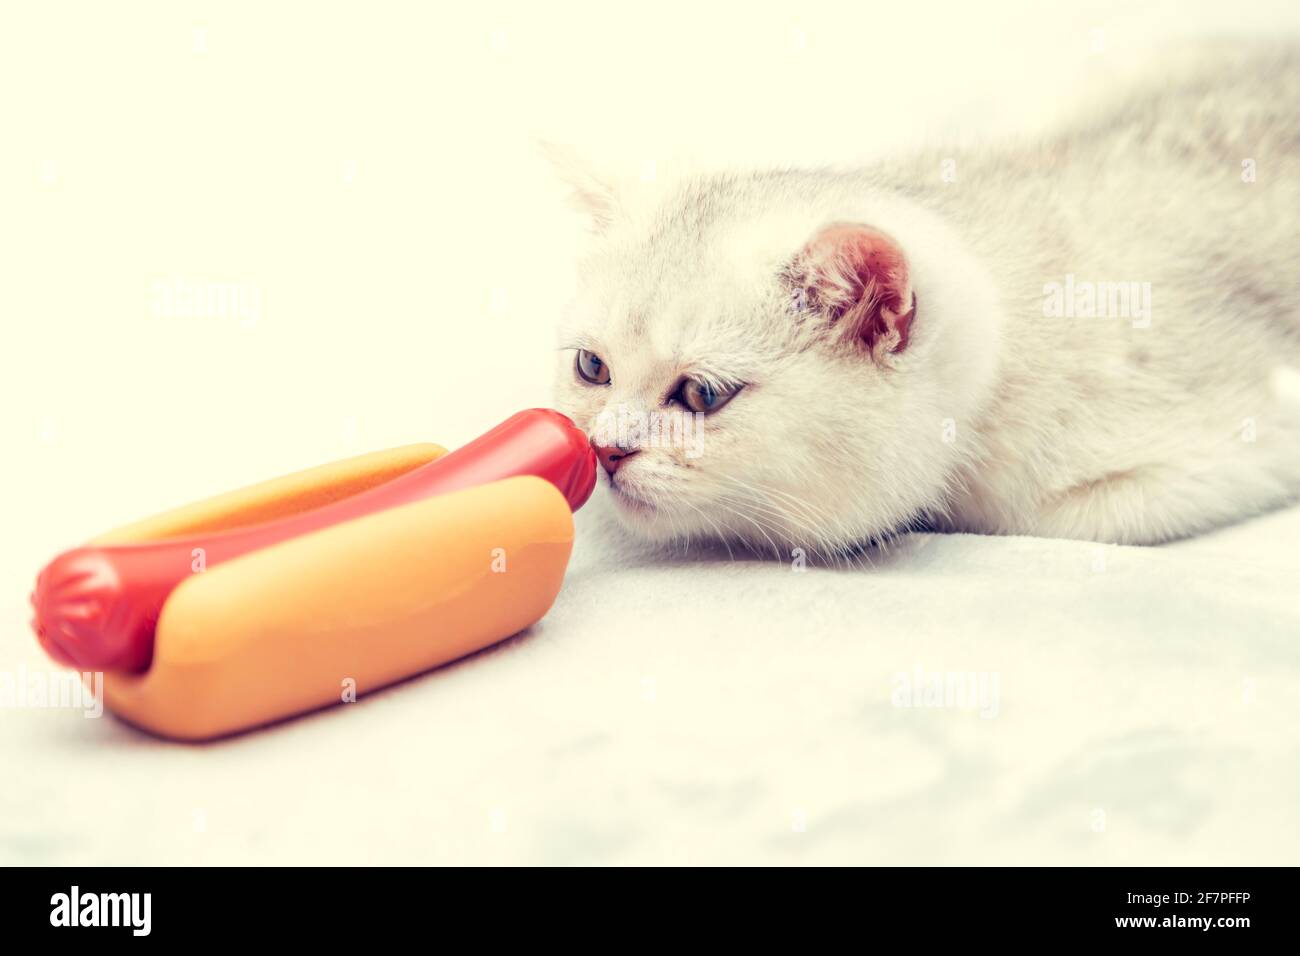 Gattino bianco giace sul letto con un cane caldo. Concetto di stile di vita povero - immobilità e abitudini alimentari malsane. Foto Stock